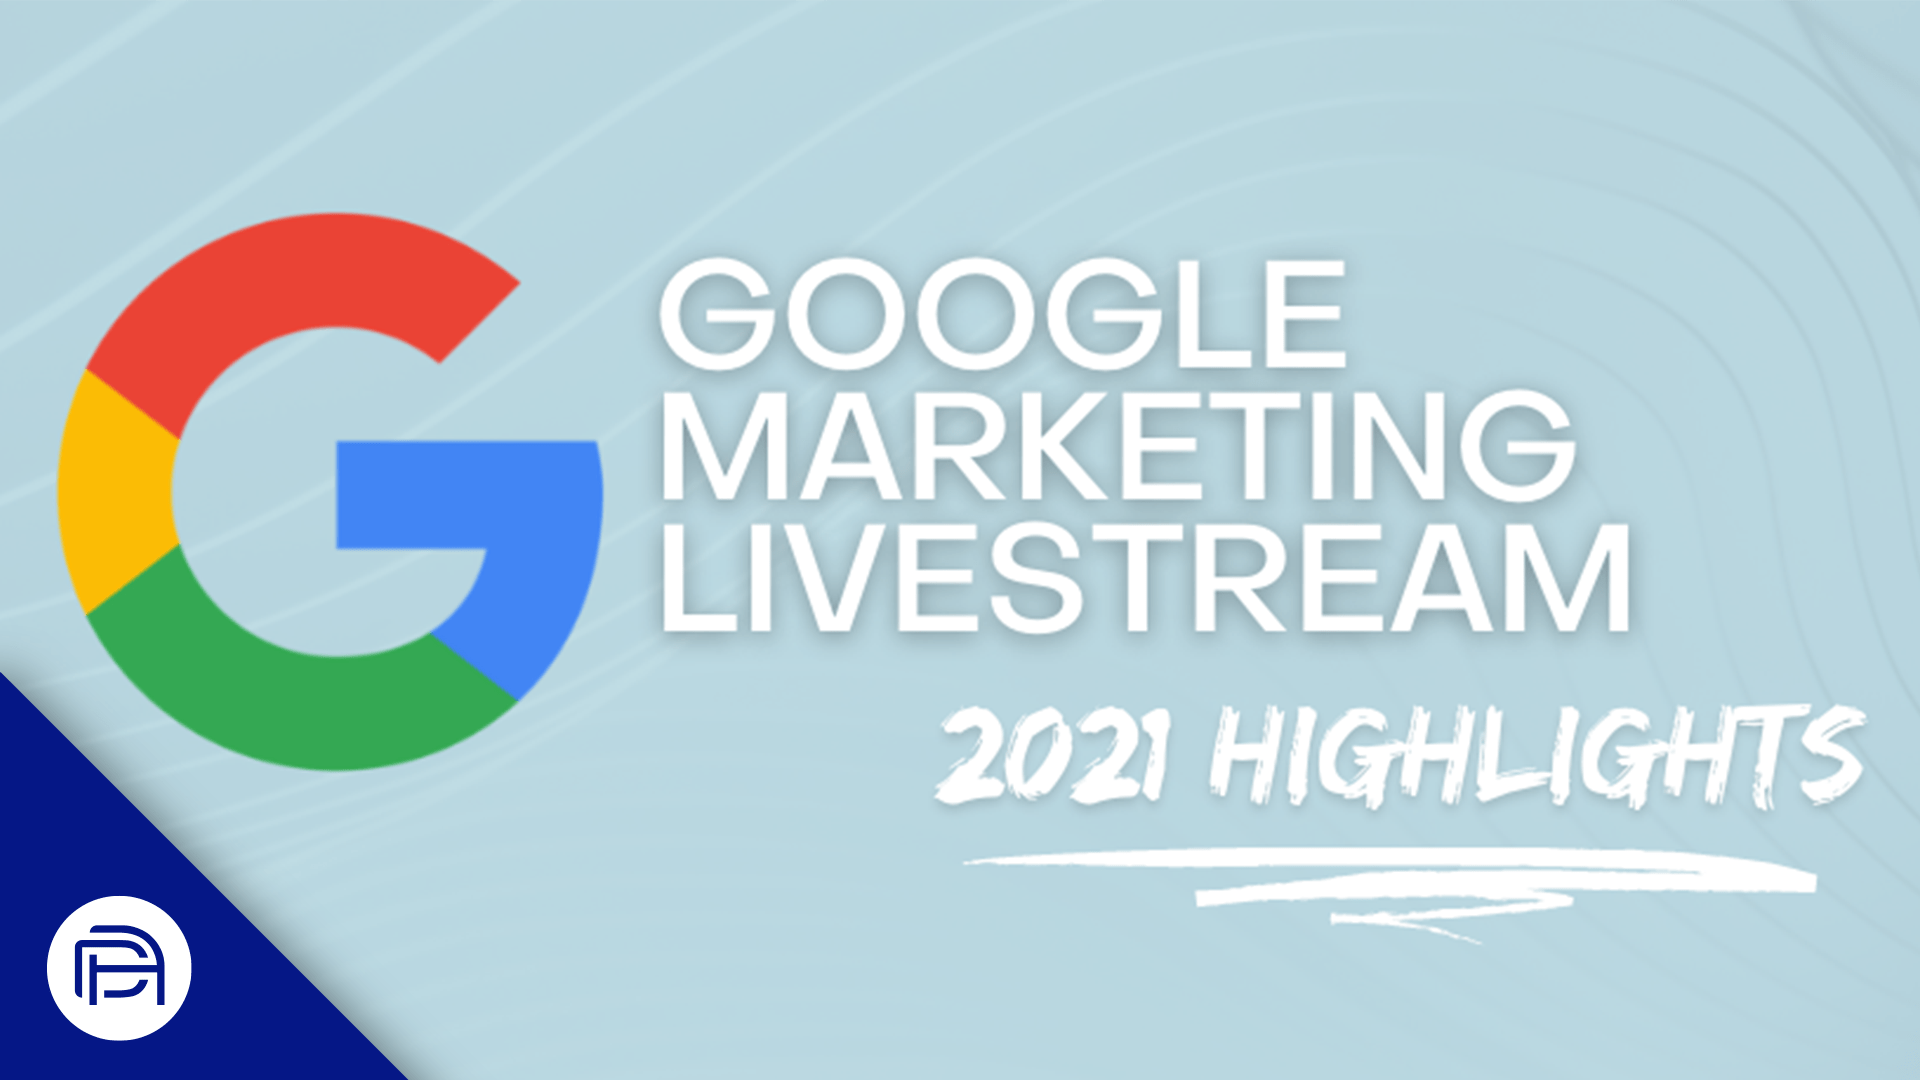 Google Marketing Livestream 2021 Highlights